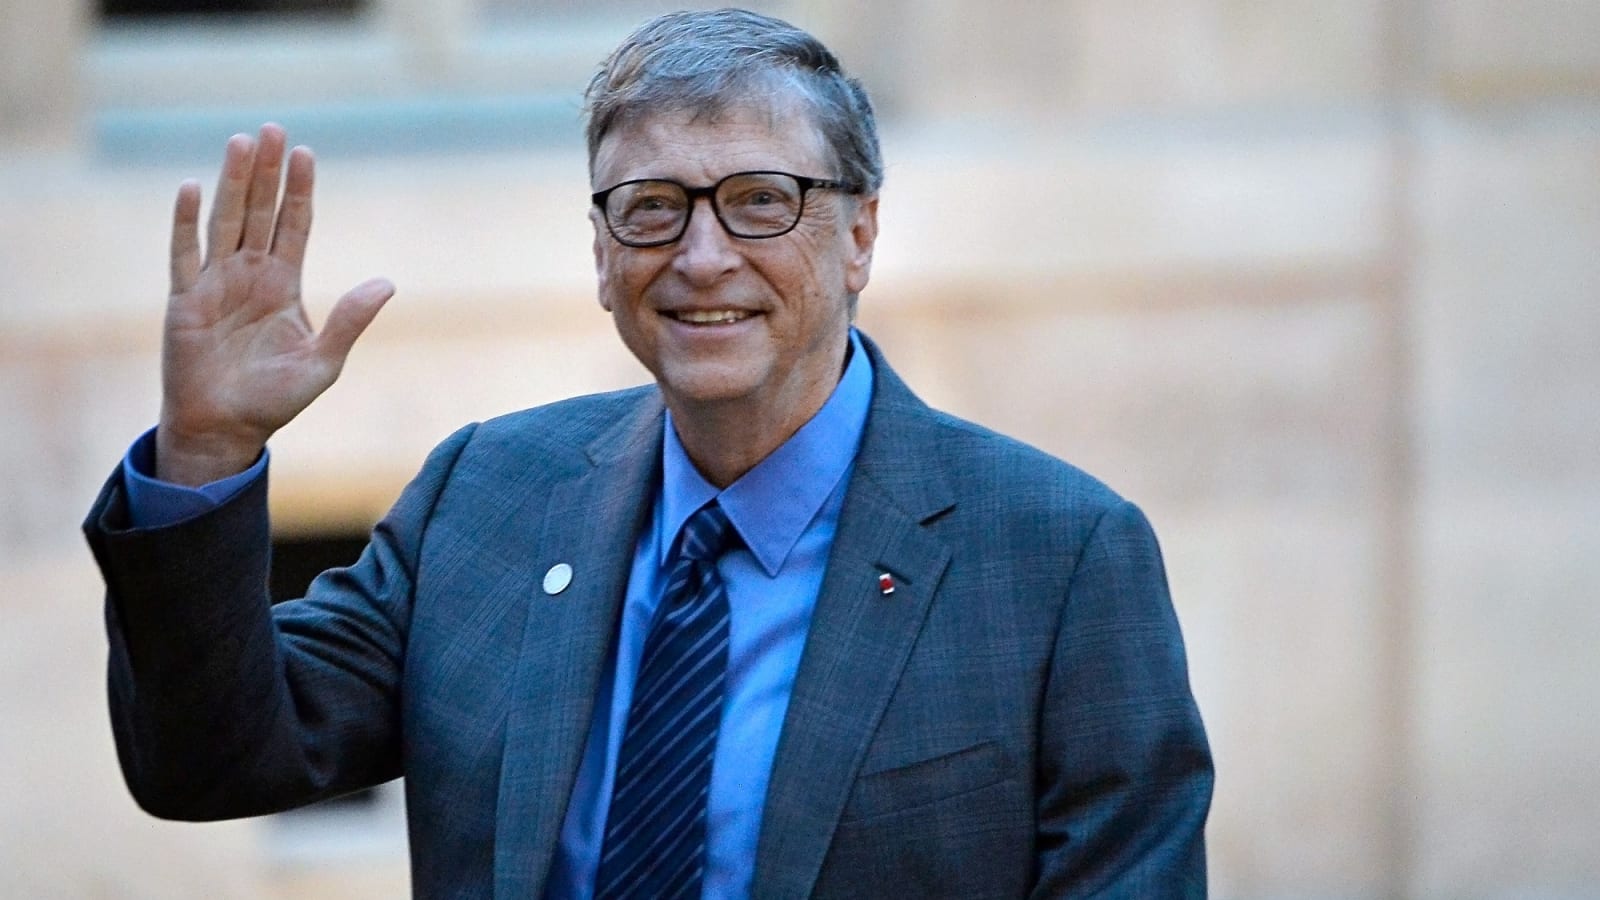 Bill Gates Seattle Microsoft Berkshire Ký Chủ Tịch  Bill Gates png tải về   Miễn phí trong suốt đứng png Tải về